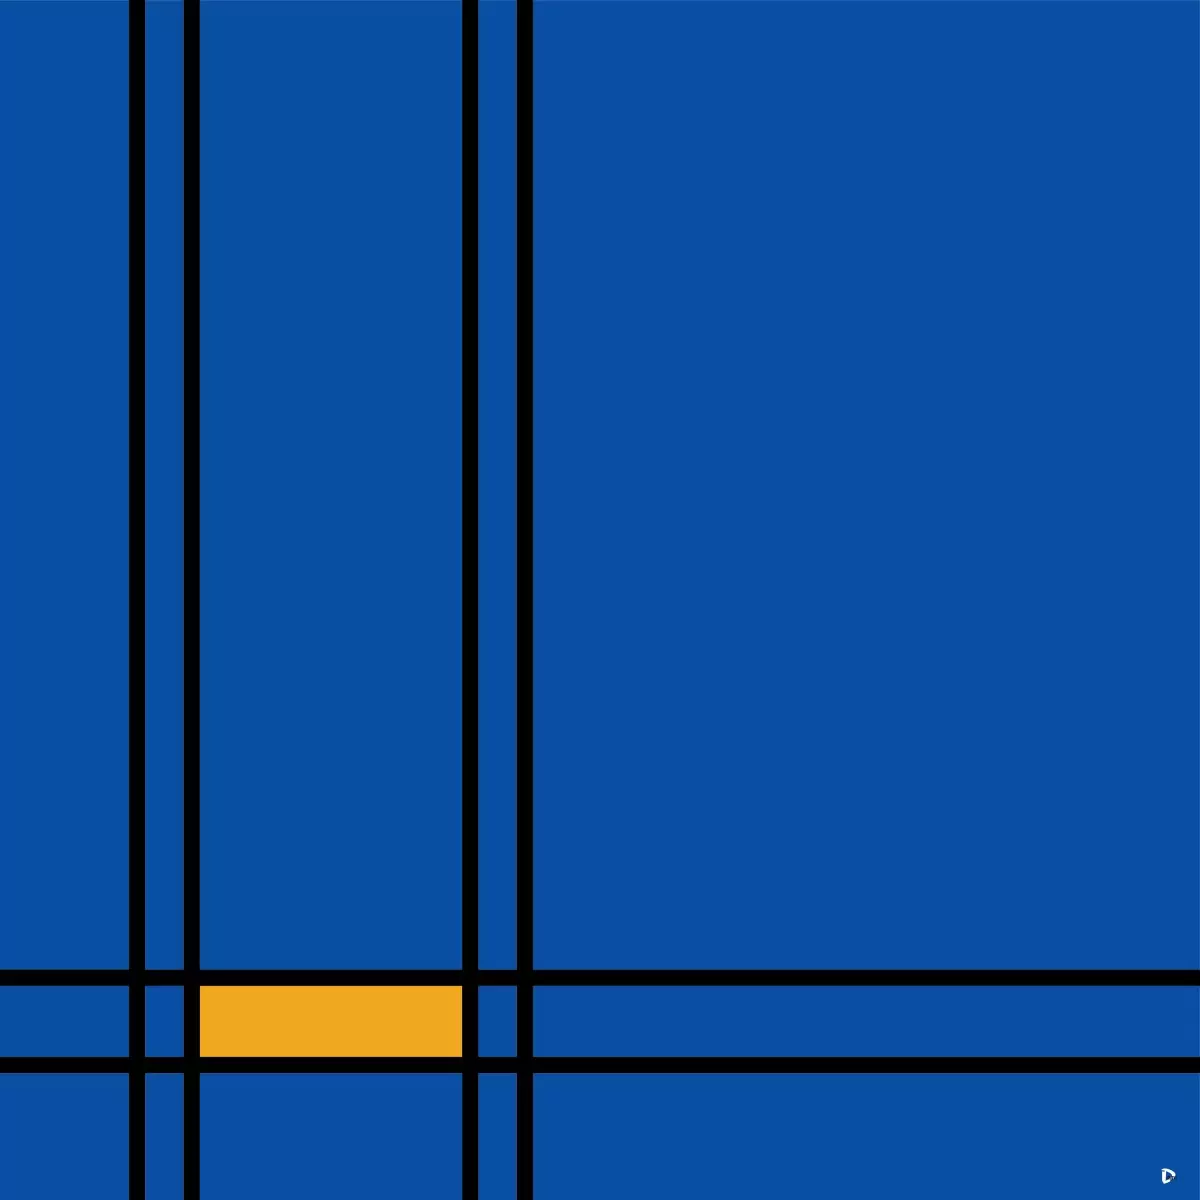 כחול צהוב - אתי דגוביץ' - חדר שינה כחול עמוק אבסטרקט מודרני סטים בסגנון גיאומטרי  - מק''ט: 329329